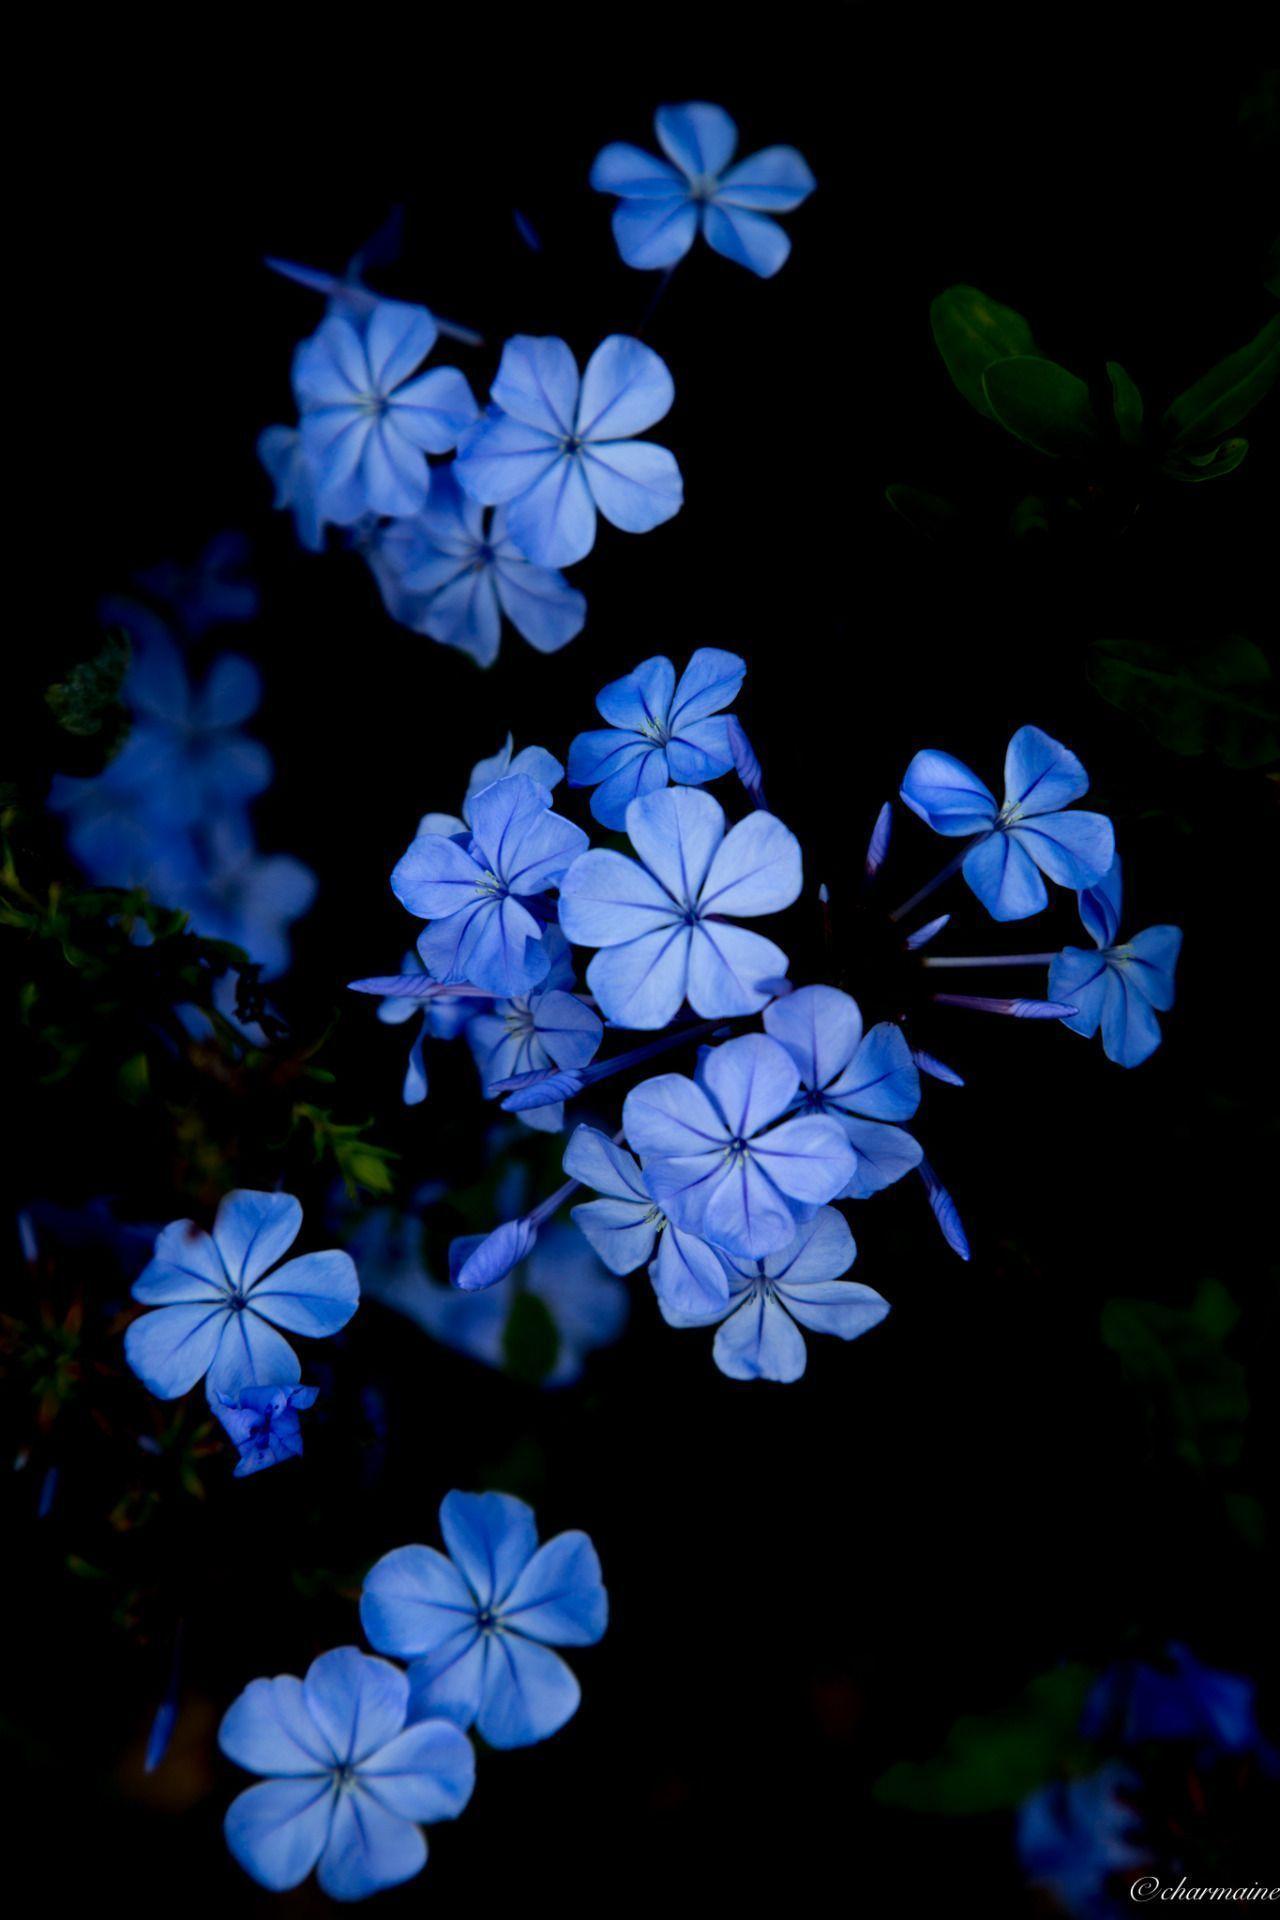 e learning for kindergarten: Dark Blue Flowers Wallpaper : Light Blue Flower Wallpapers Top Free